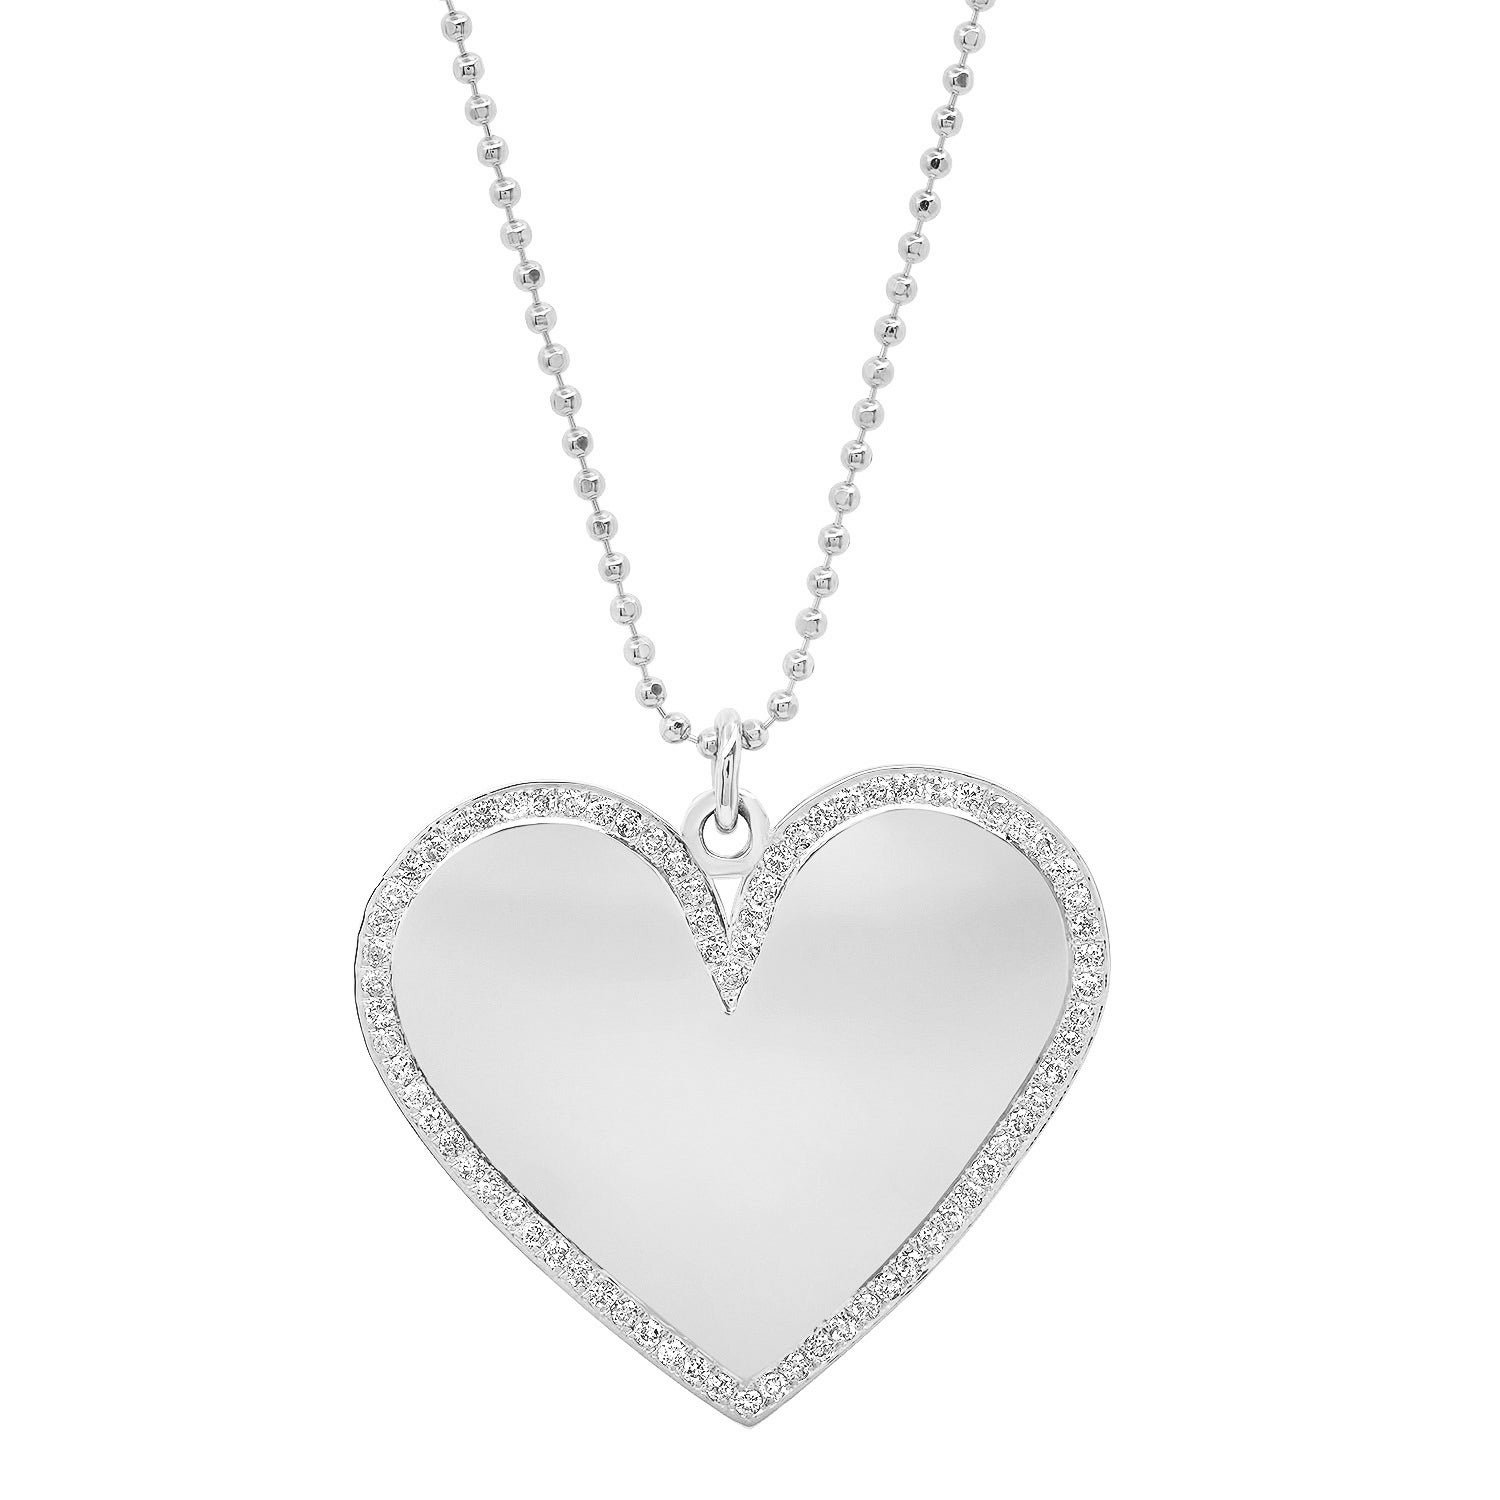 Large Mixed Cut Diamond Heart Pendant 14K White / 16-17